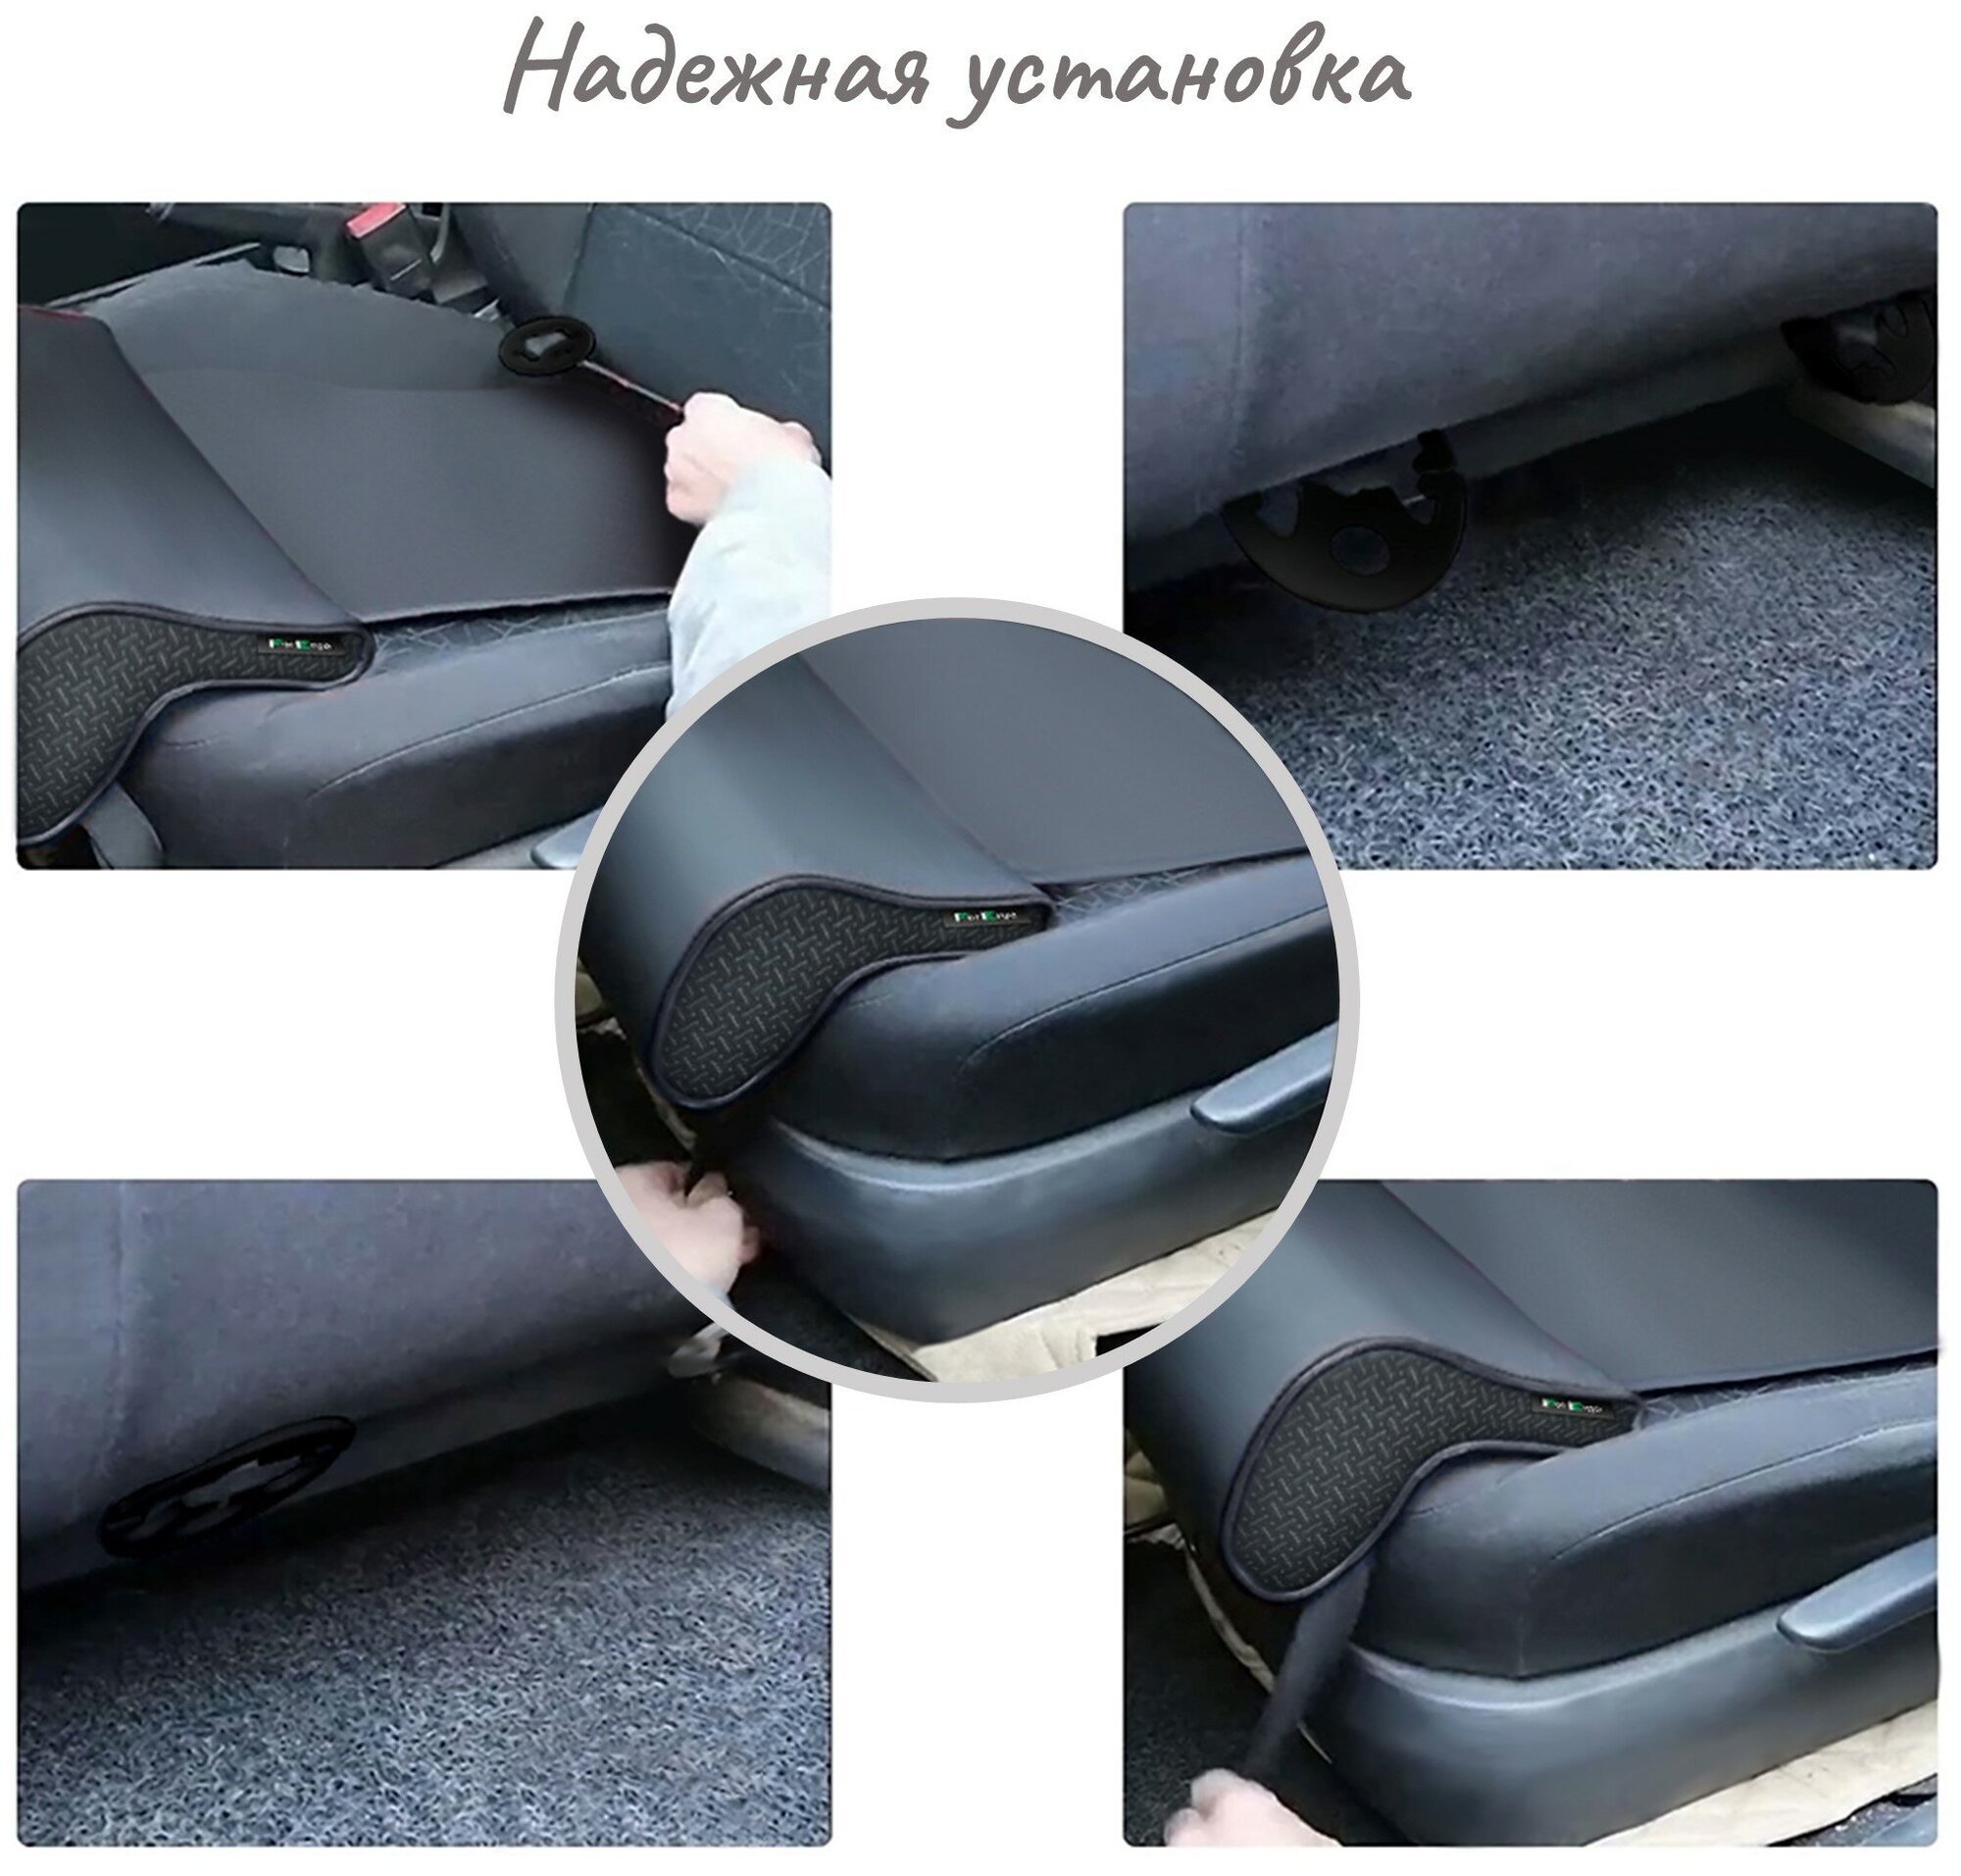 Подушка удлинитель сиденья и автокресла, подколенная опора на сиденье под бедра колени ноги в машину